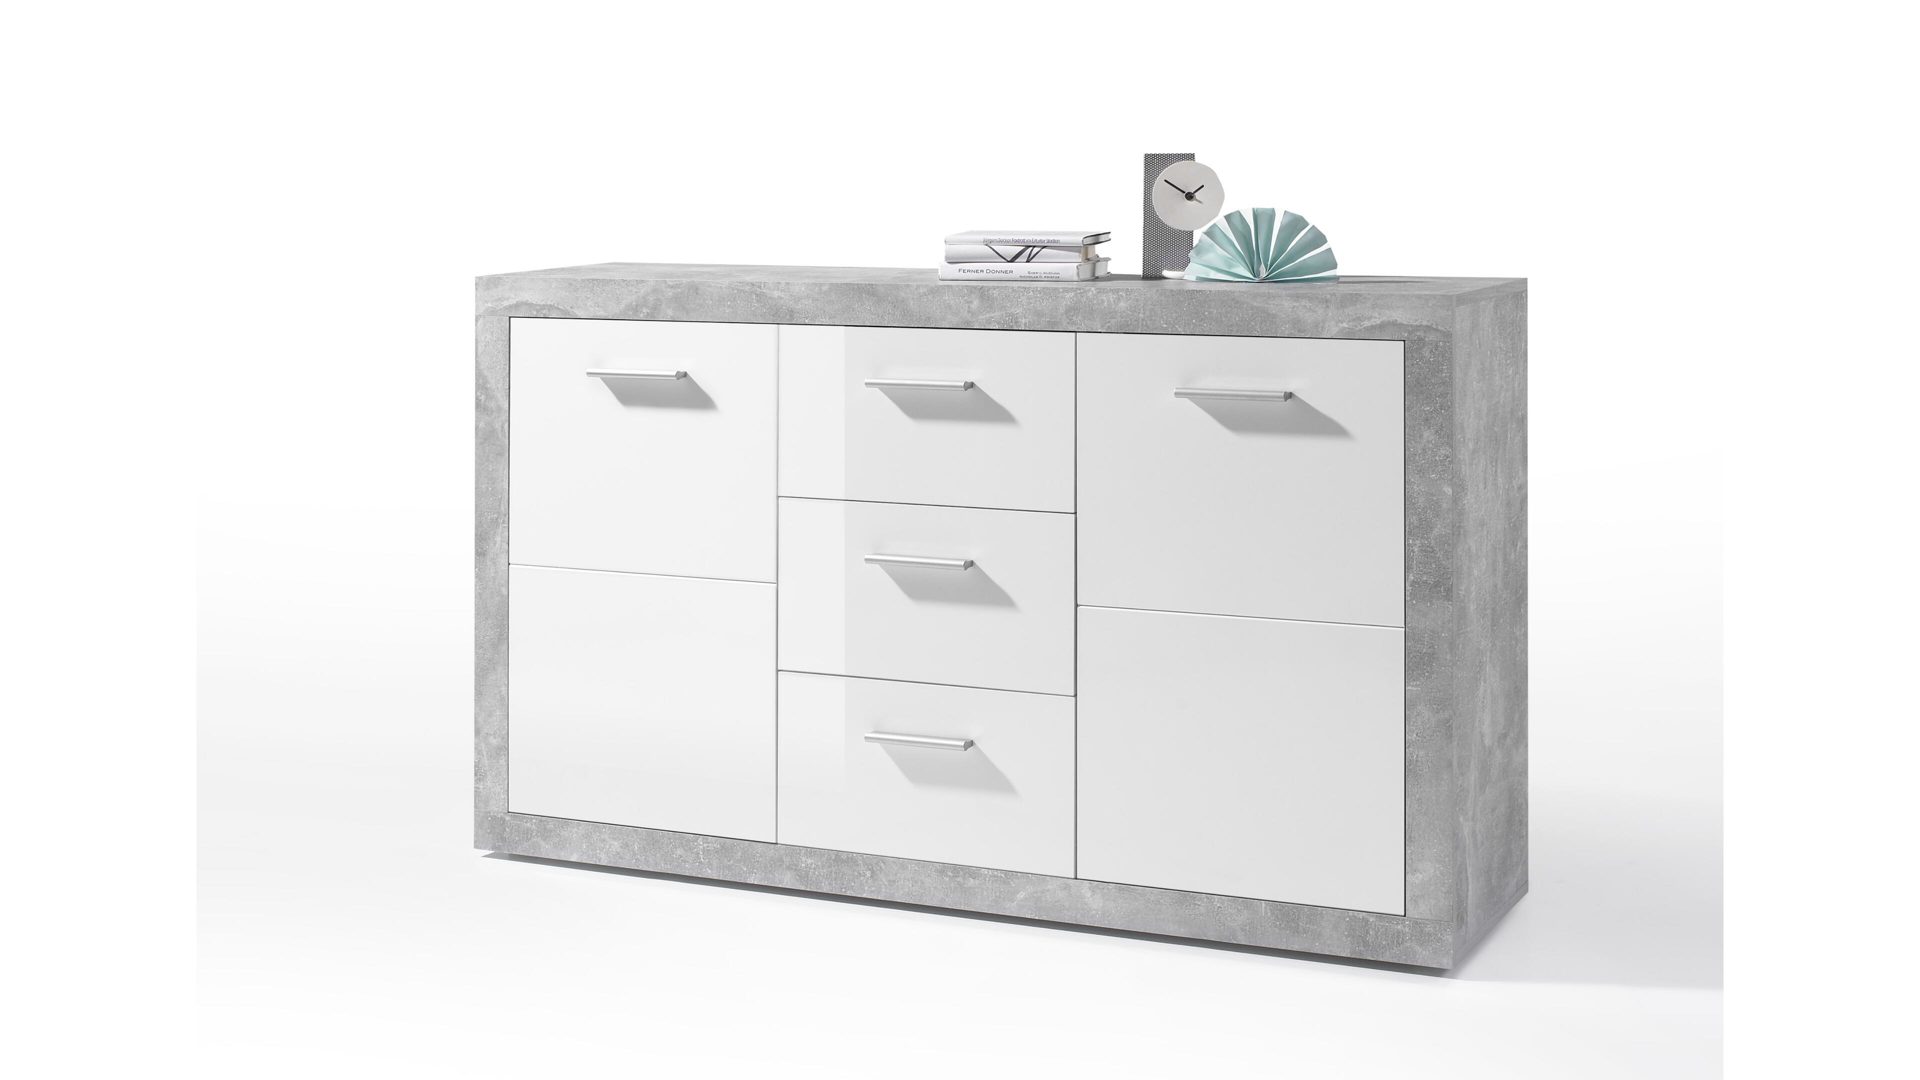 Sideboard Bega consult aus Holz in Weiß Sideboard betonfarbene & weiße Kunststoffoberflächen – zwei Türen, drei Schubladen